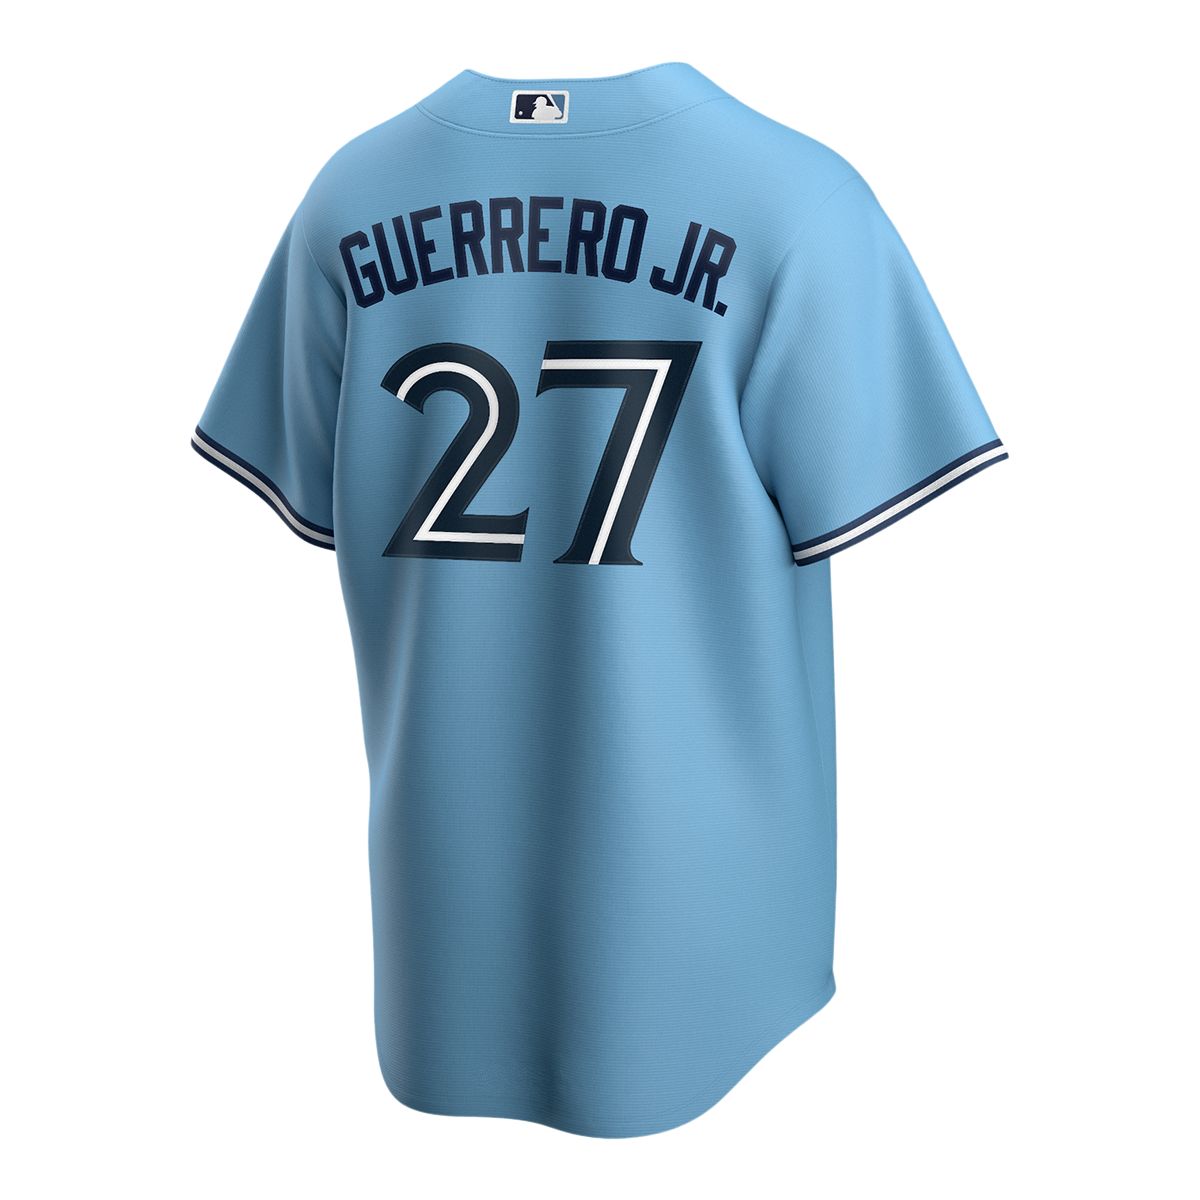 Toronto Blue Jays Nike Vladimir Guerrero Jr. Official Replica Jersey,  Baseball, MLB